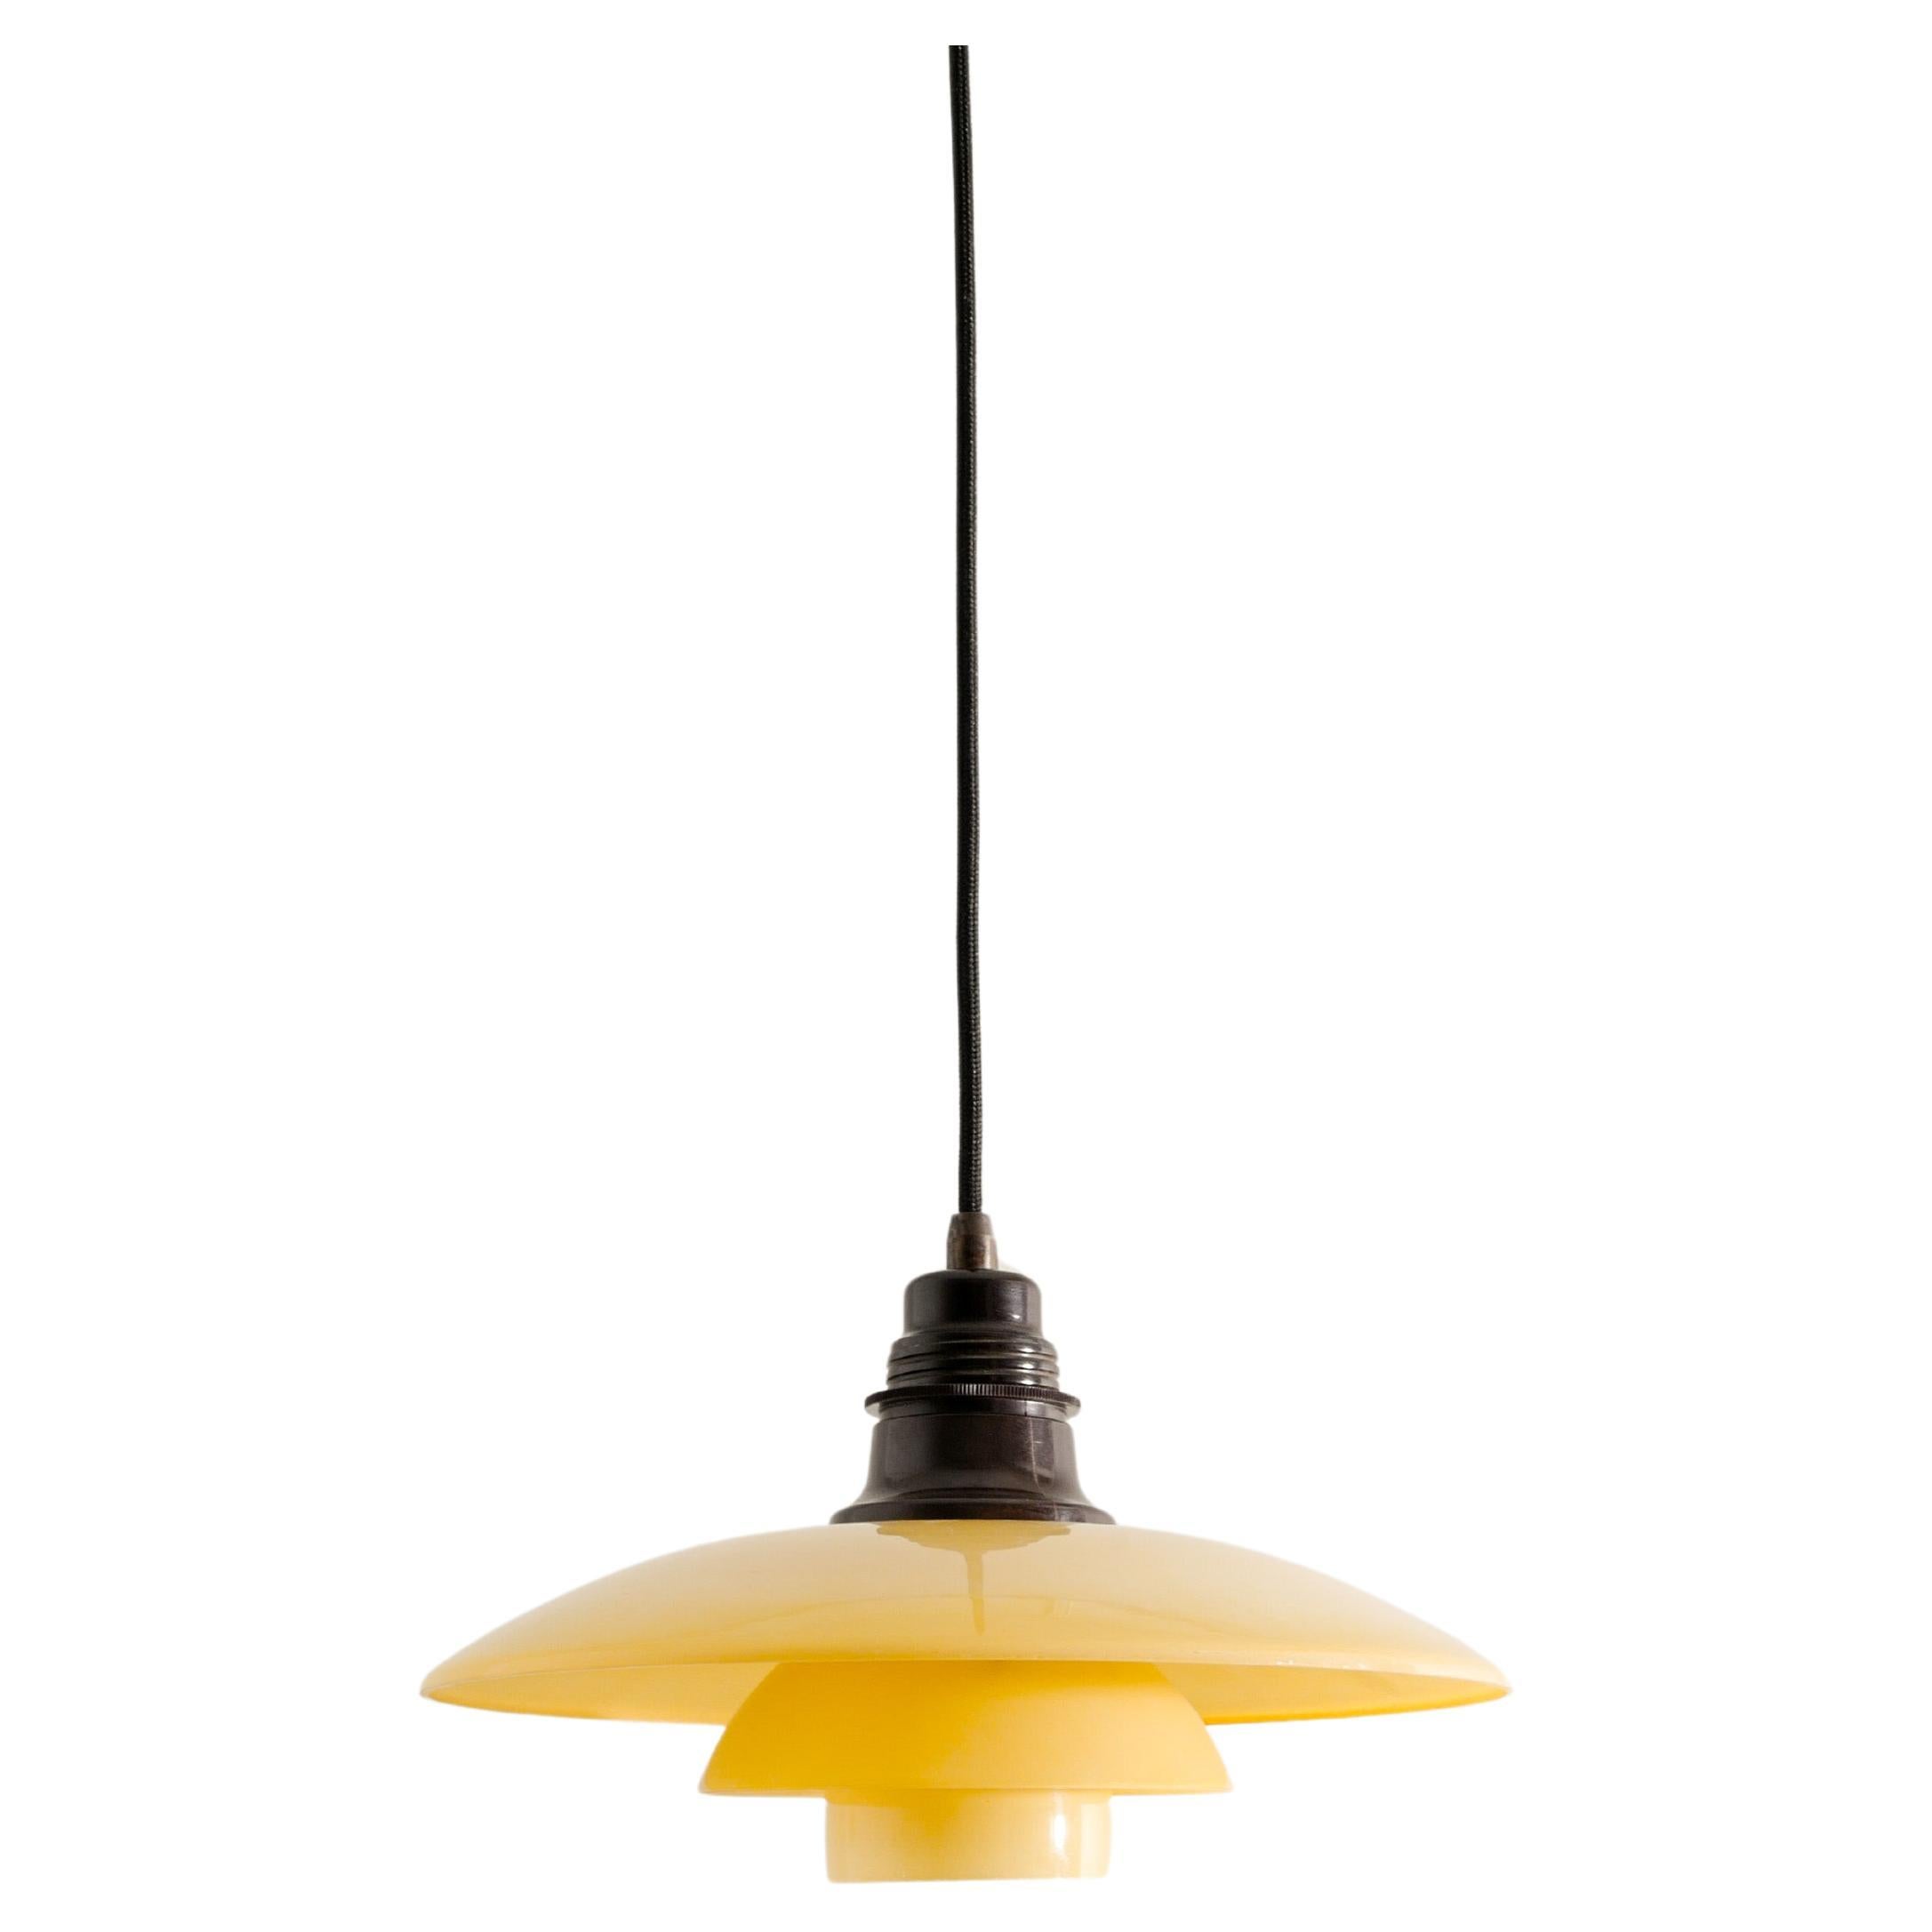 Poul Henningsen "PH 3/2" Ceiling Lamp Pendant by Louis Poulsen Denmark, 1930s 